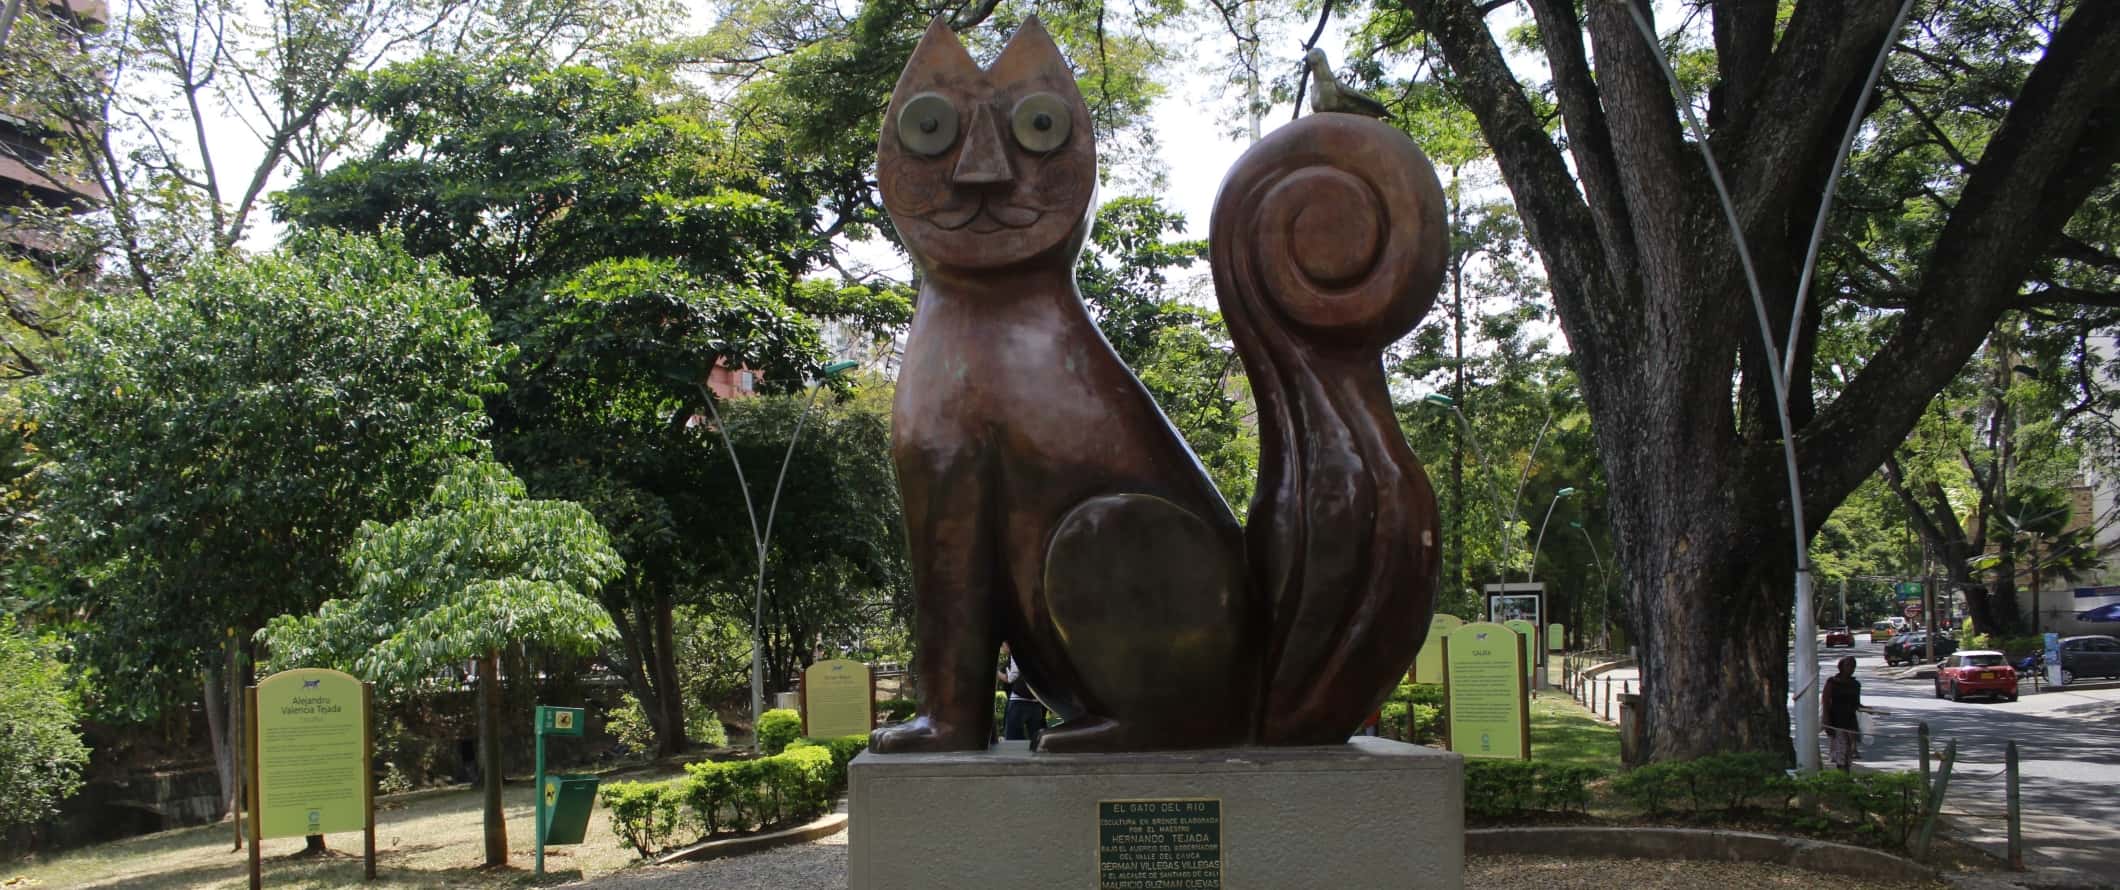 Enorme estátua de bronze de gato em um parque em Cali, Colômbia